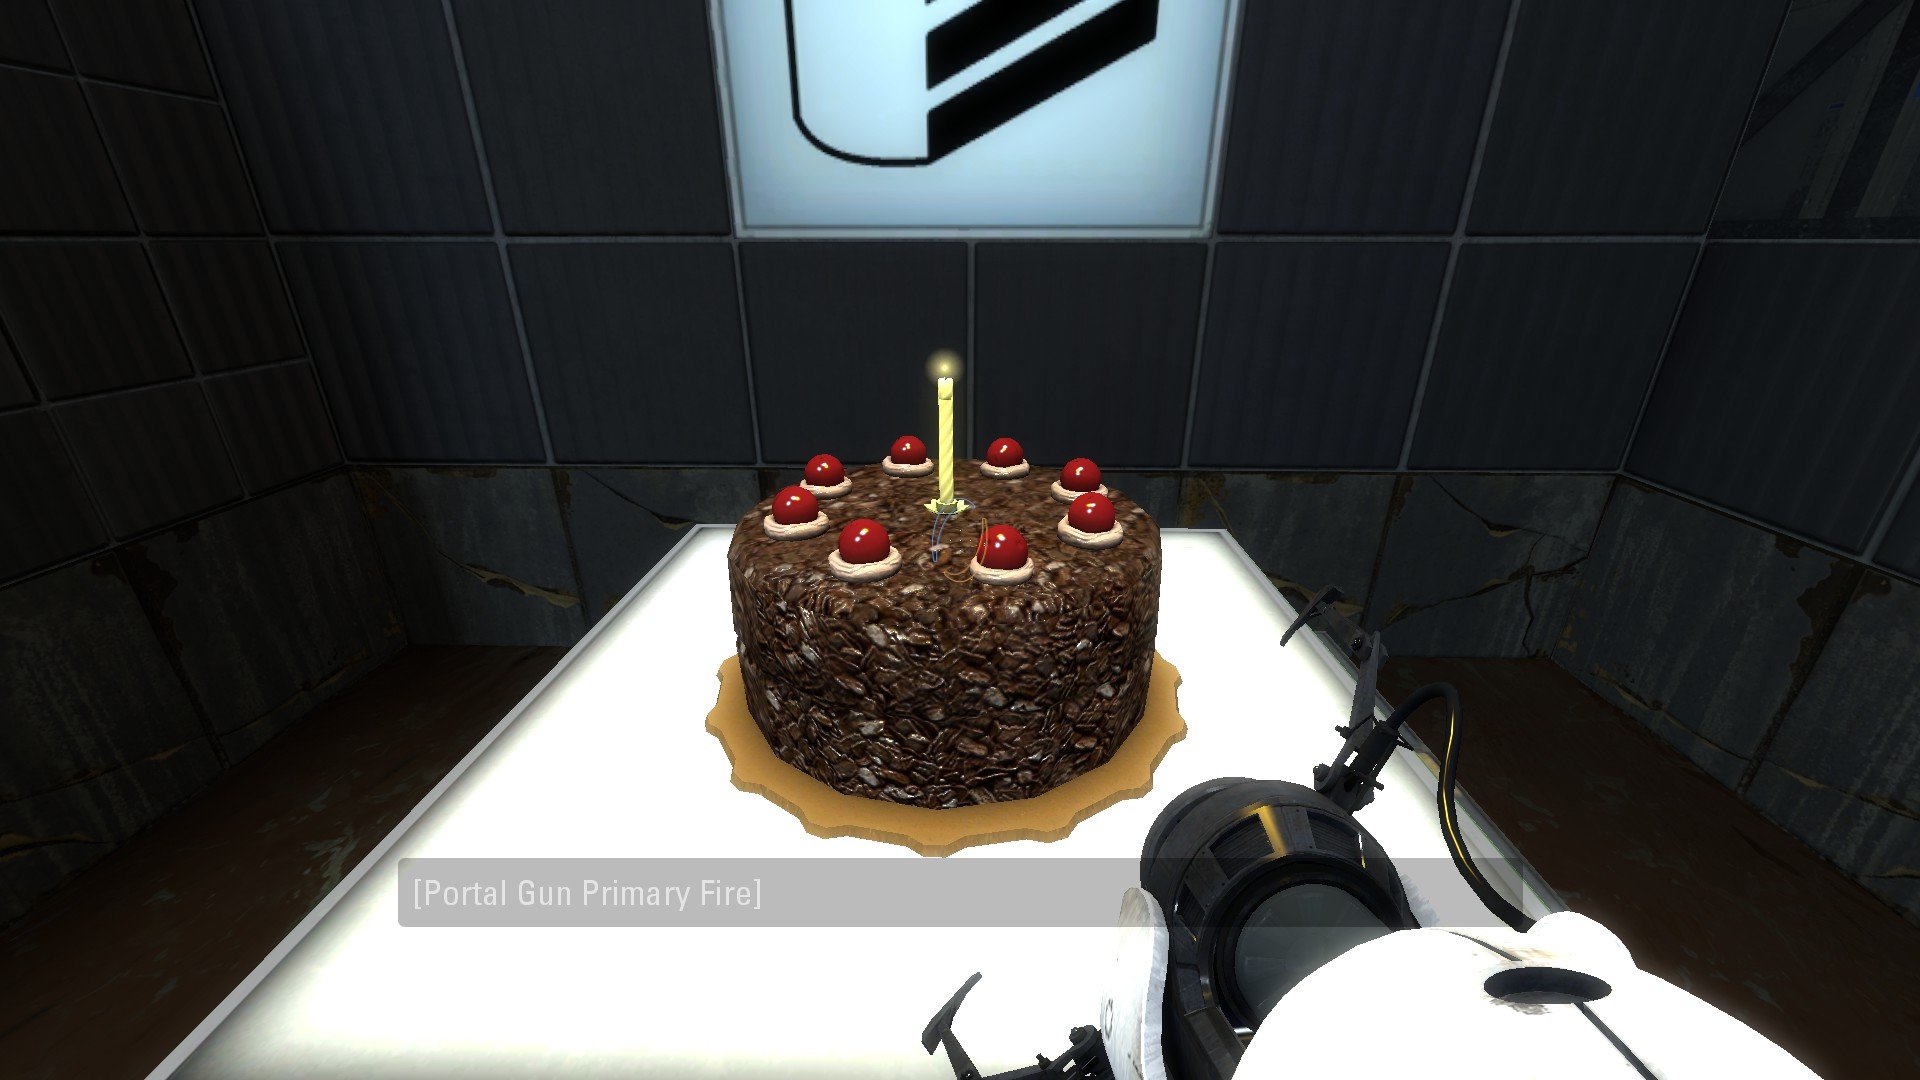 Portal 2 cake is gone фото 10